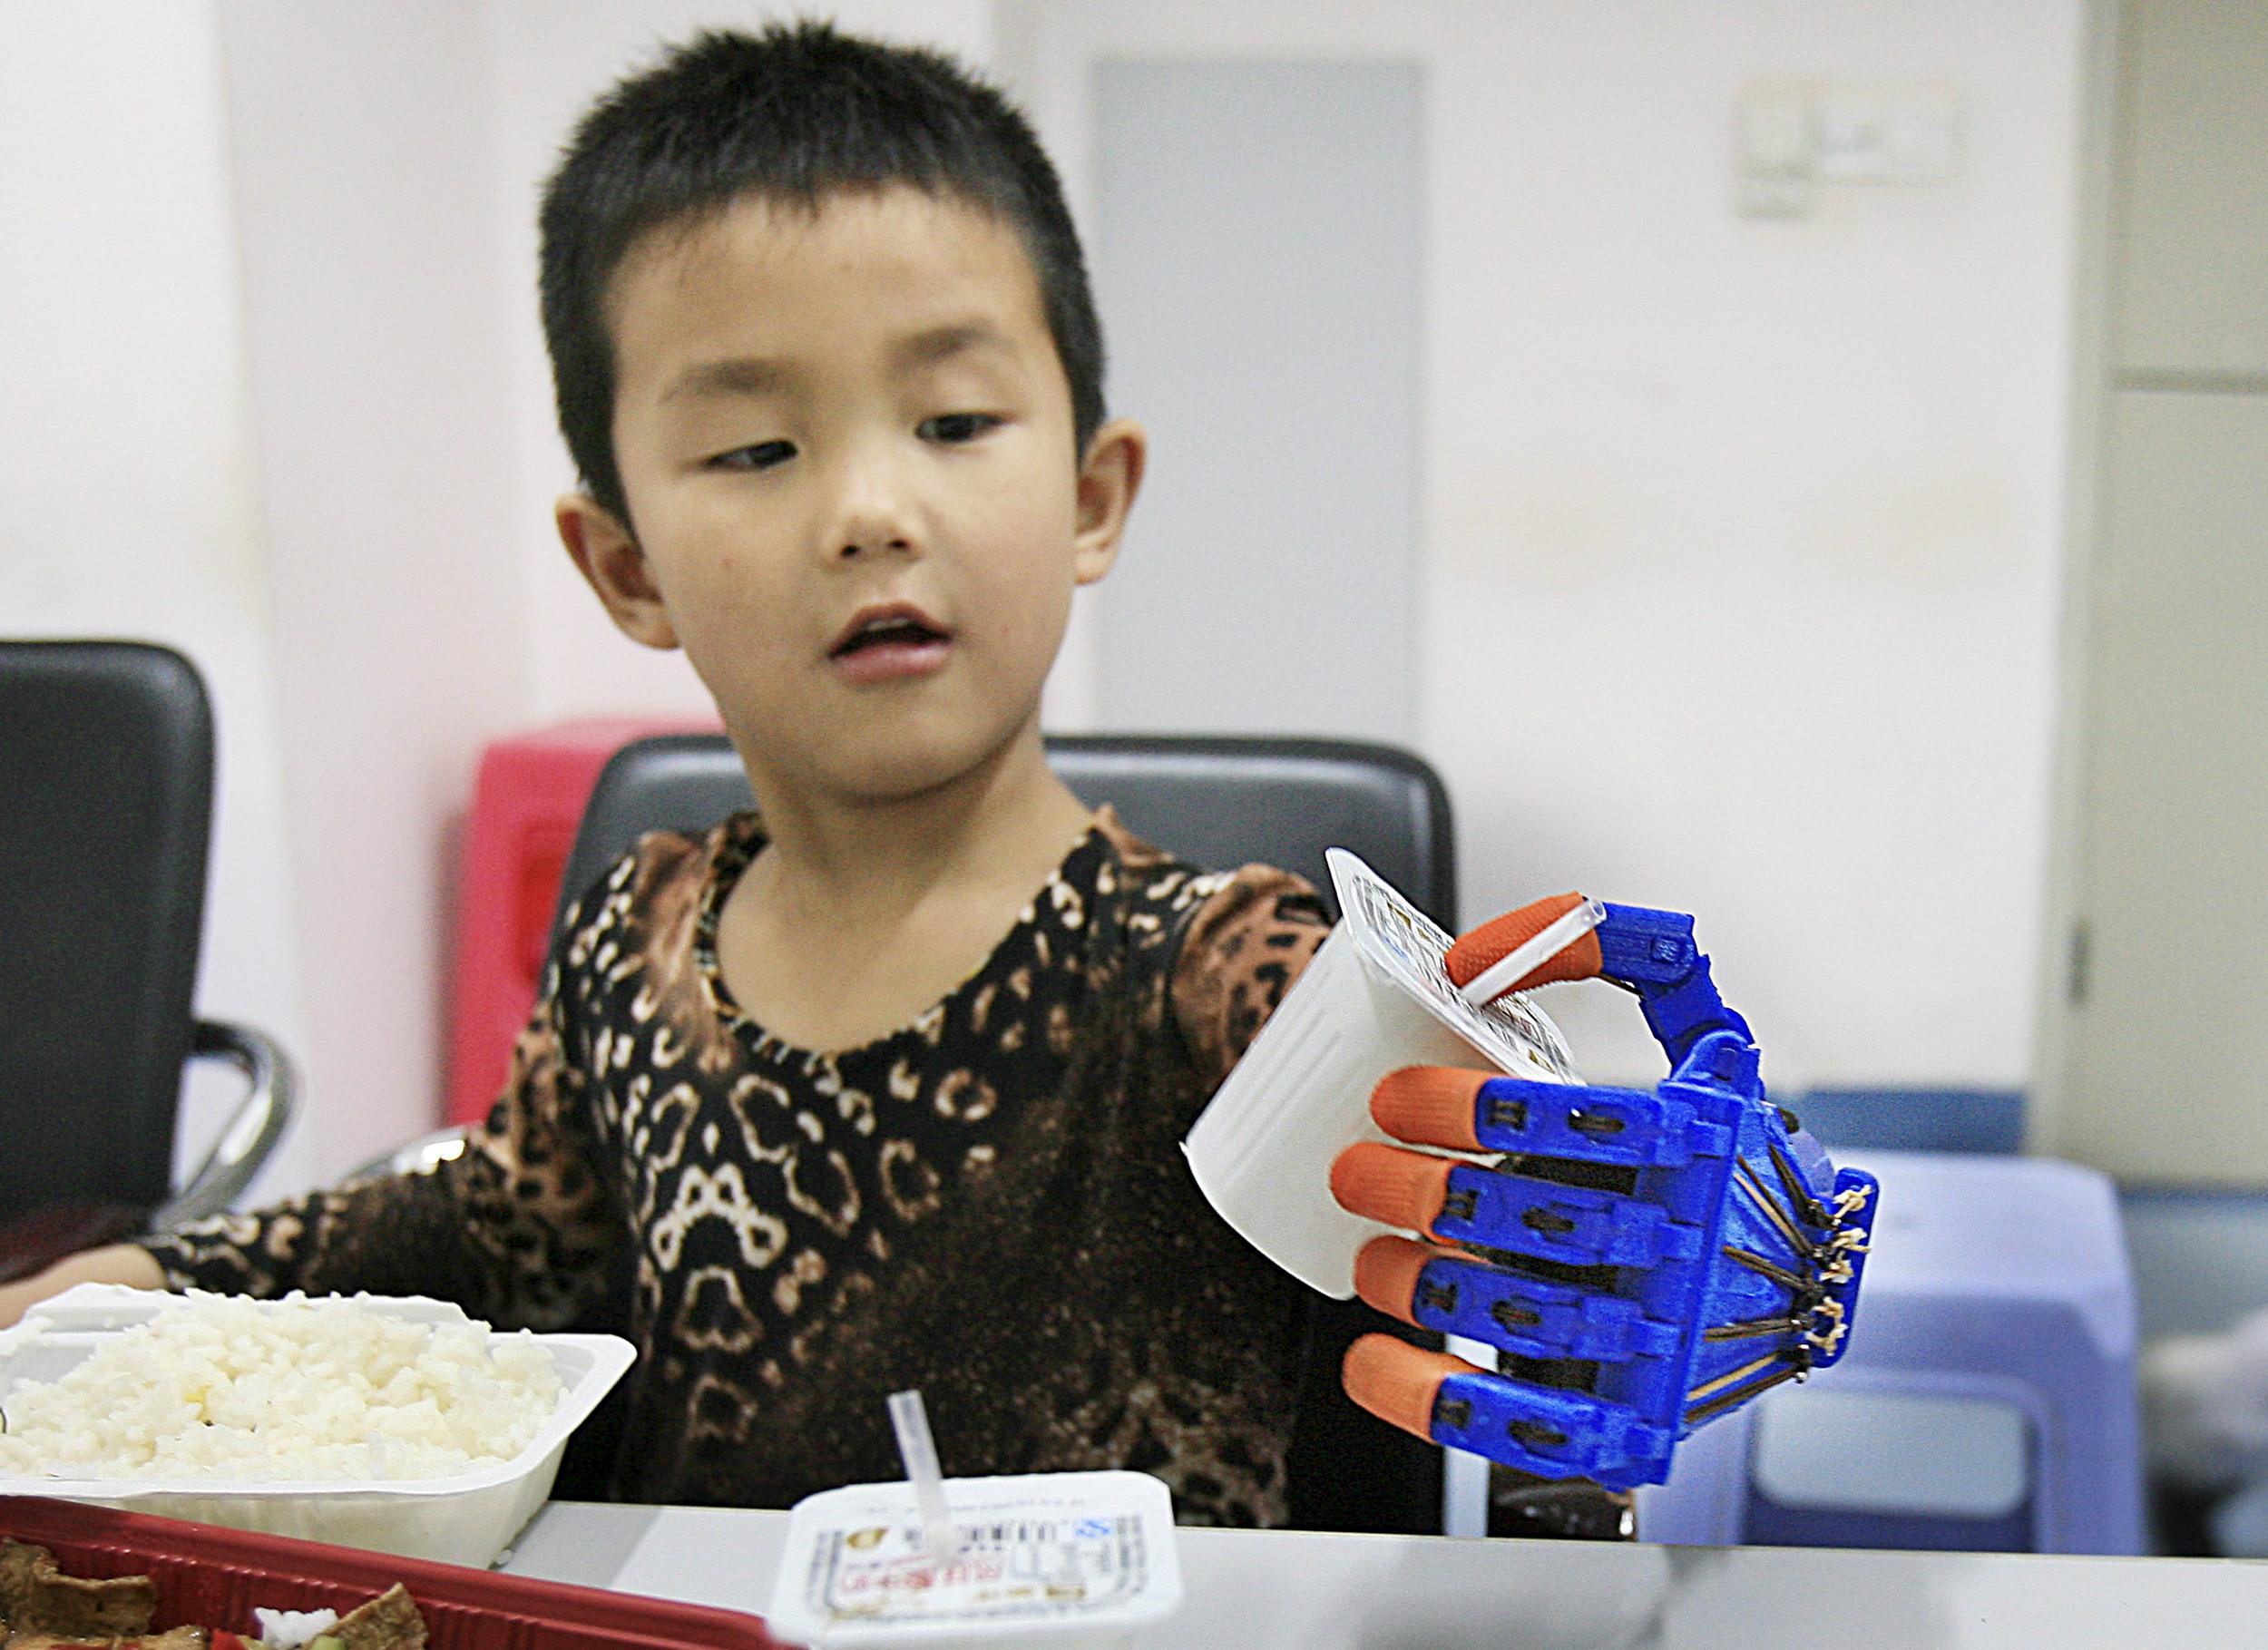 Egy hatéves kínai kisfiú, Hsziaocseng, akinek egy autóbaleset miatt négyévesen amputálták a bal karját. A terv az, hogy az amputáció után megmaradt idegeket sikerüljön a protézisen át stimulálni